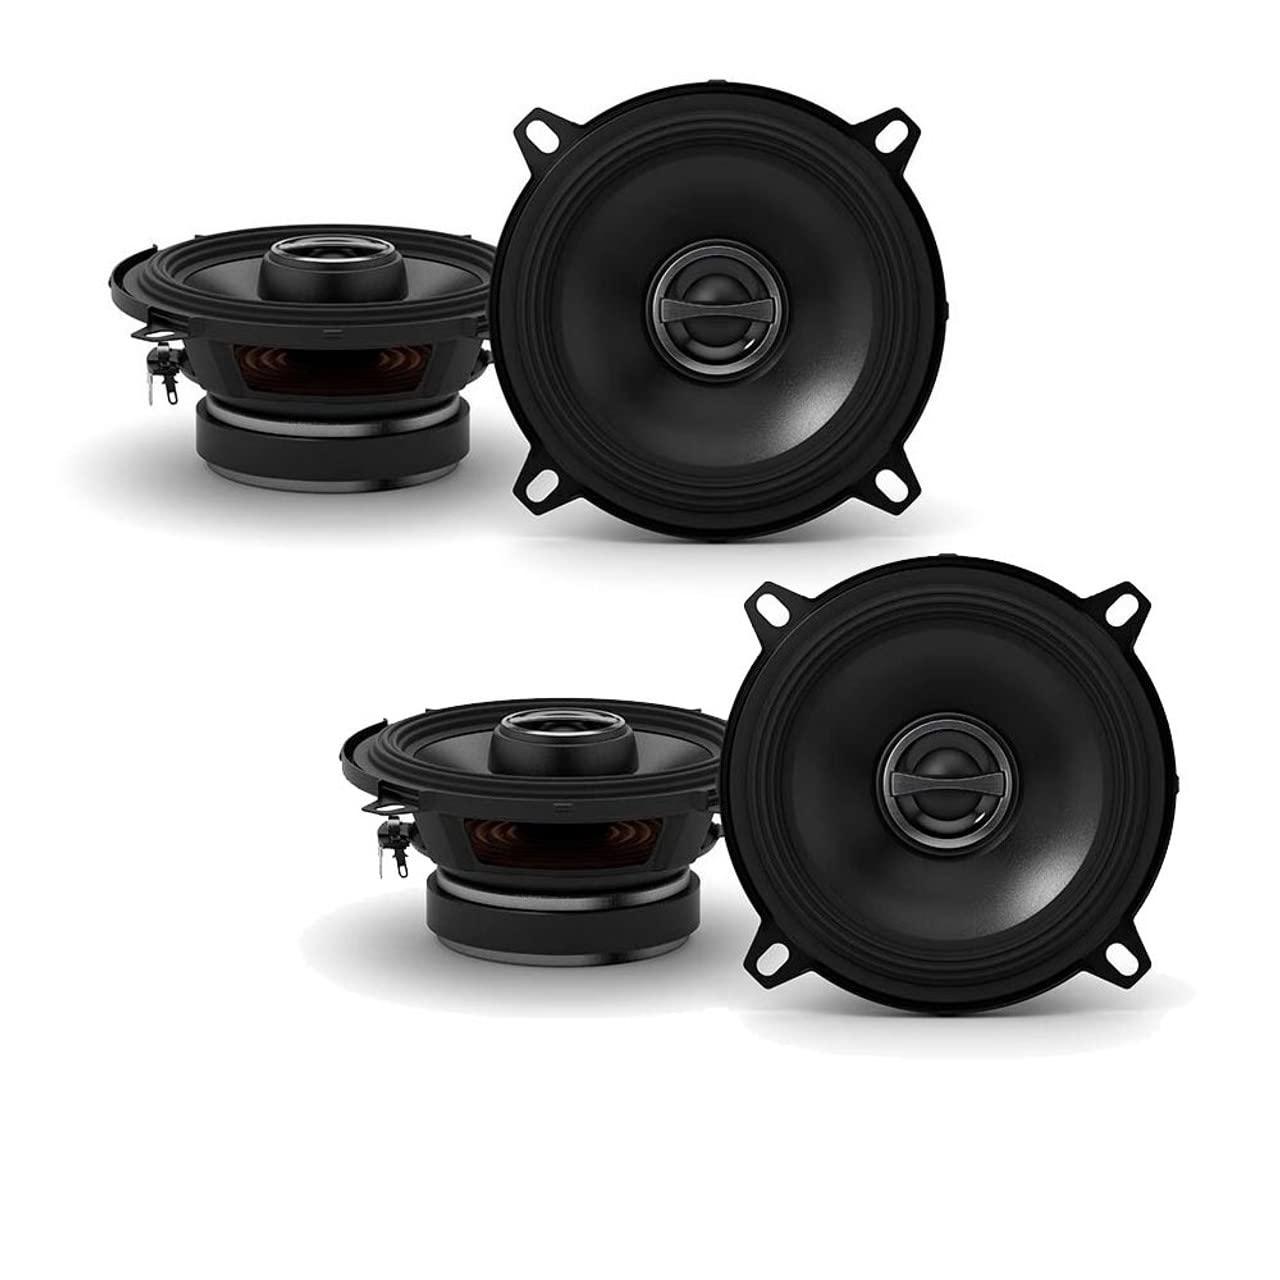 alpine s-s50 car audio type s series 5 1/4" 220 watt speakers - 2 pair with 20' wire package